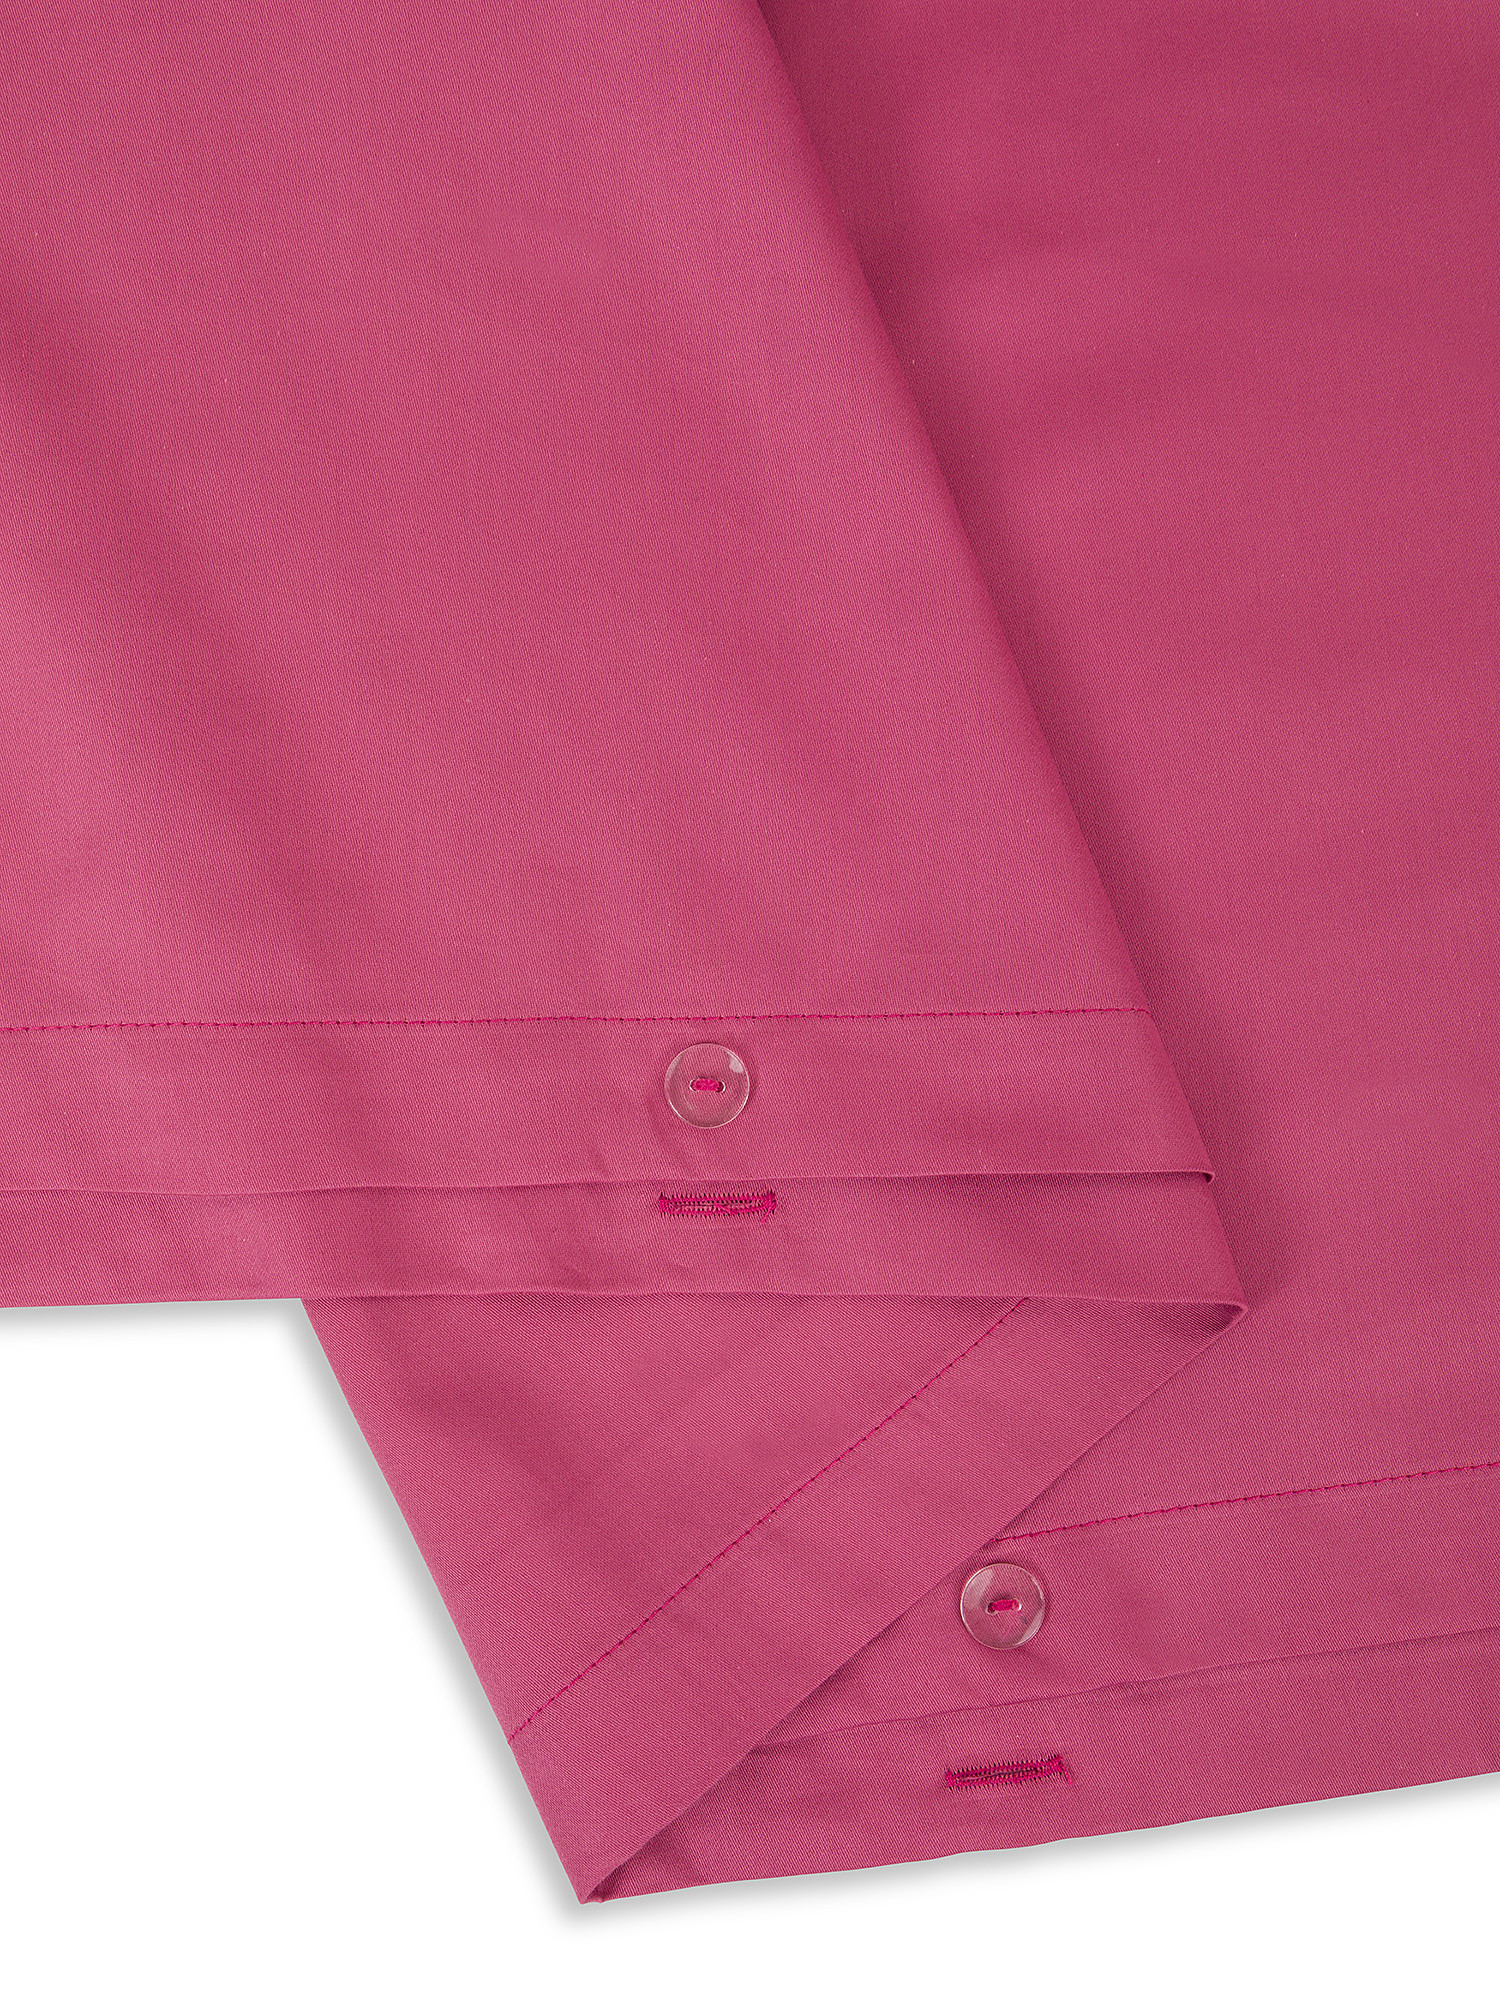 Solid color cotton satin duvet cover set, Pink, large image number 1